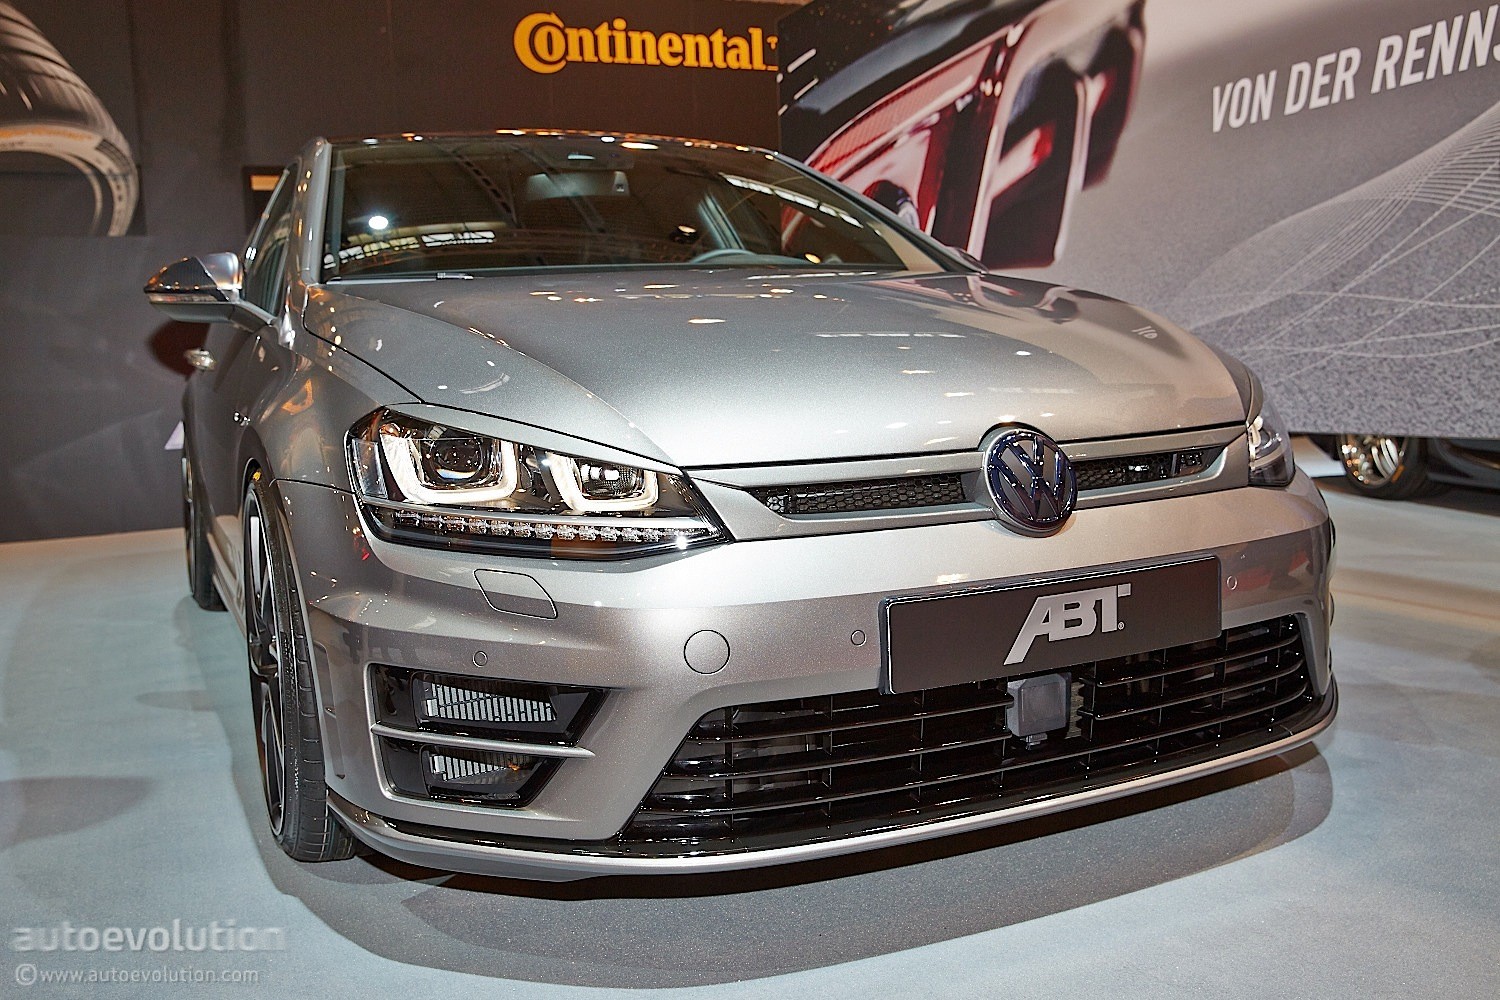 VW Golf 7 R Facelift: Tuning von Abt